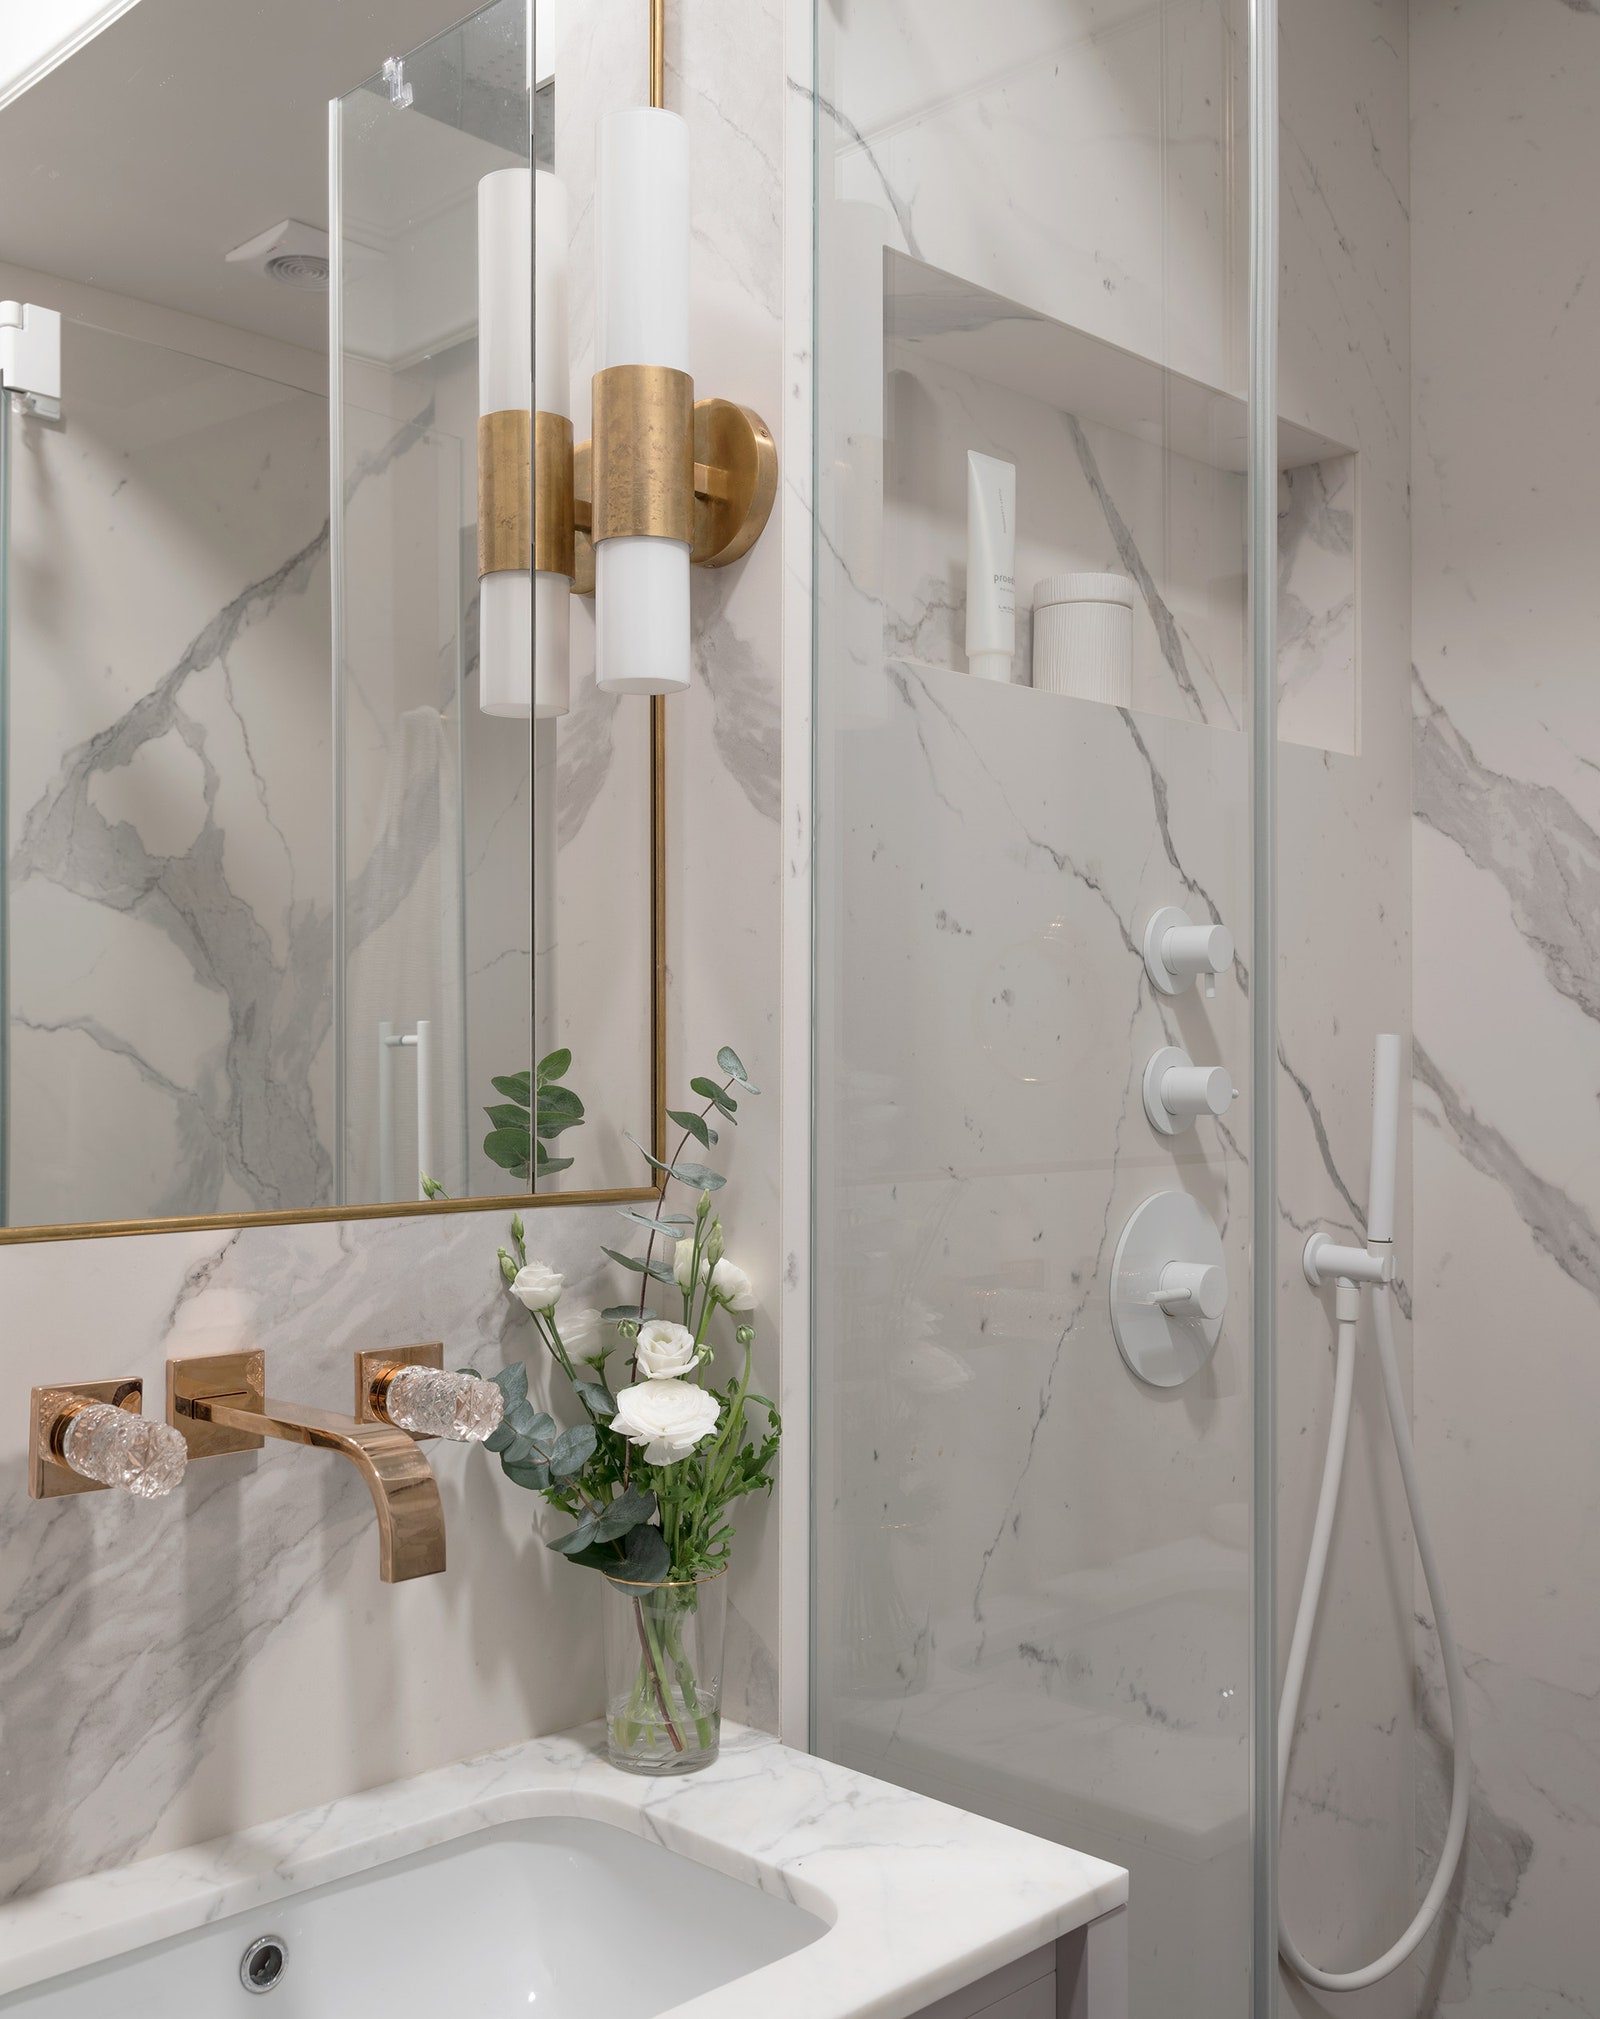 Ванная комната. Бра Penz Aerin Lauder Visual Comfort Gallery смеситель и душевой набор Fantini “Хогарт” зеркало из...